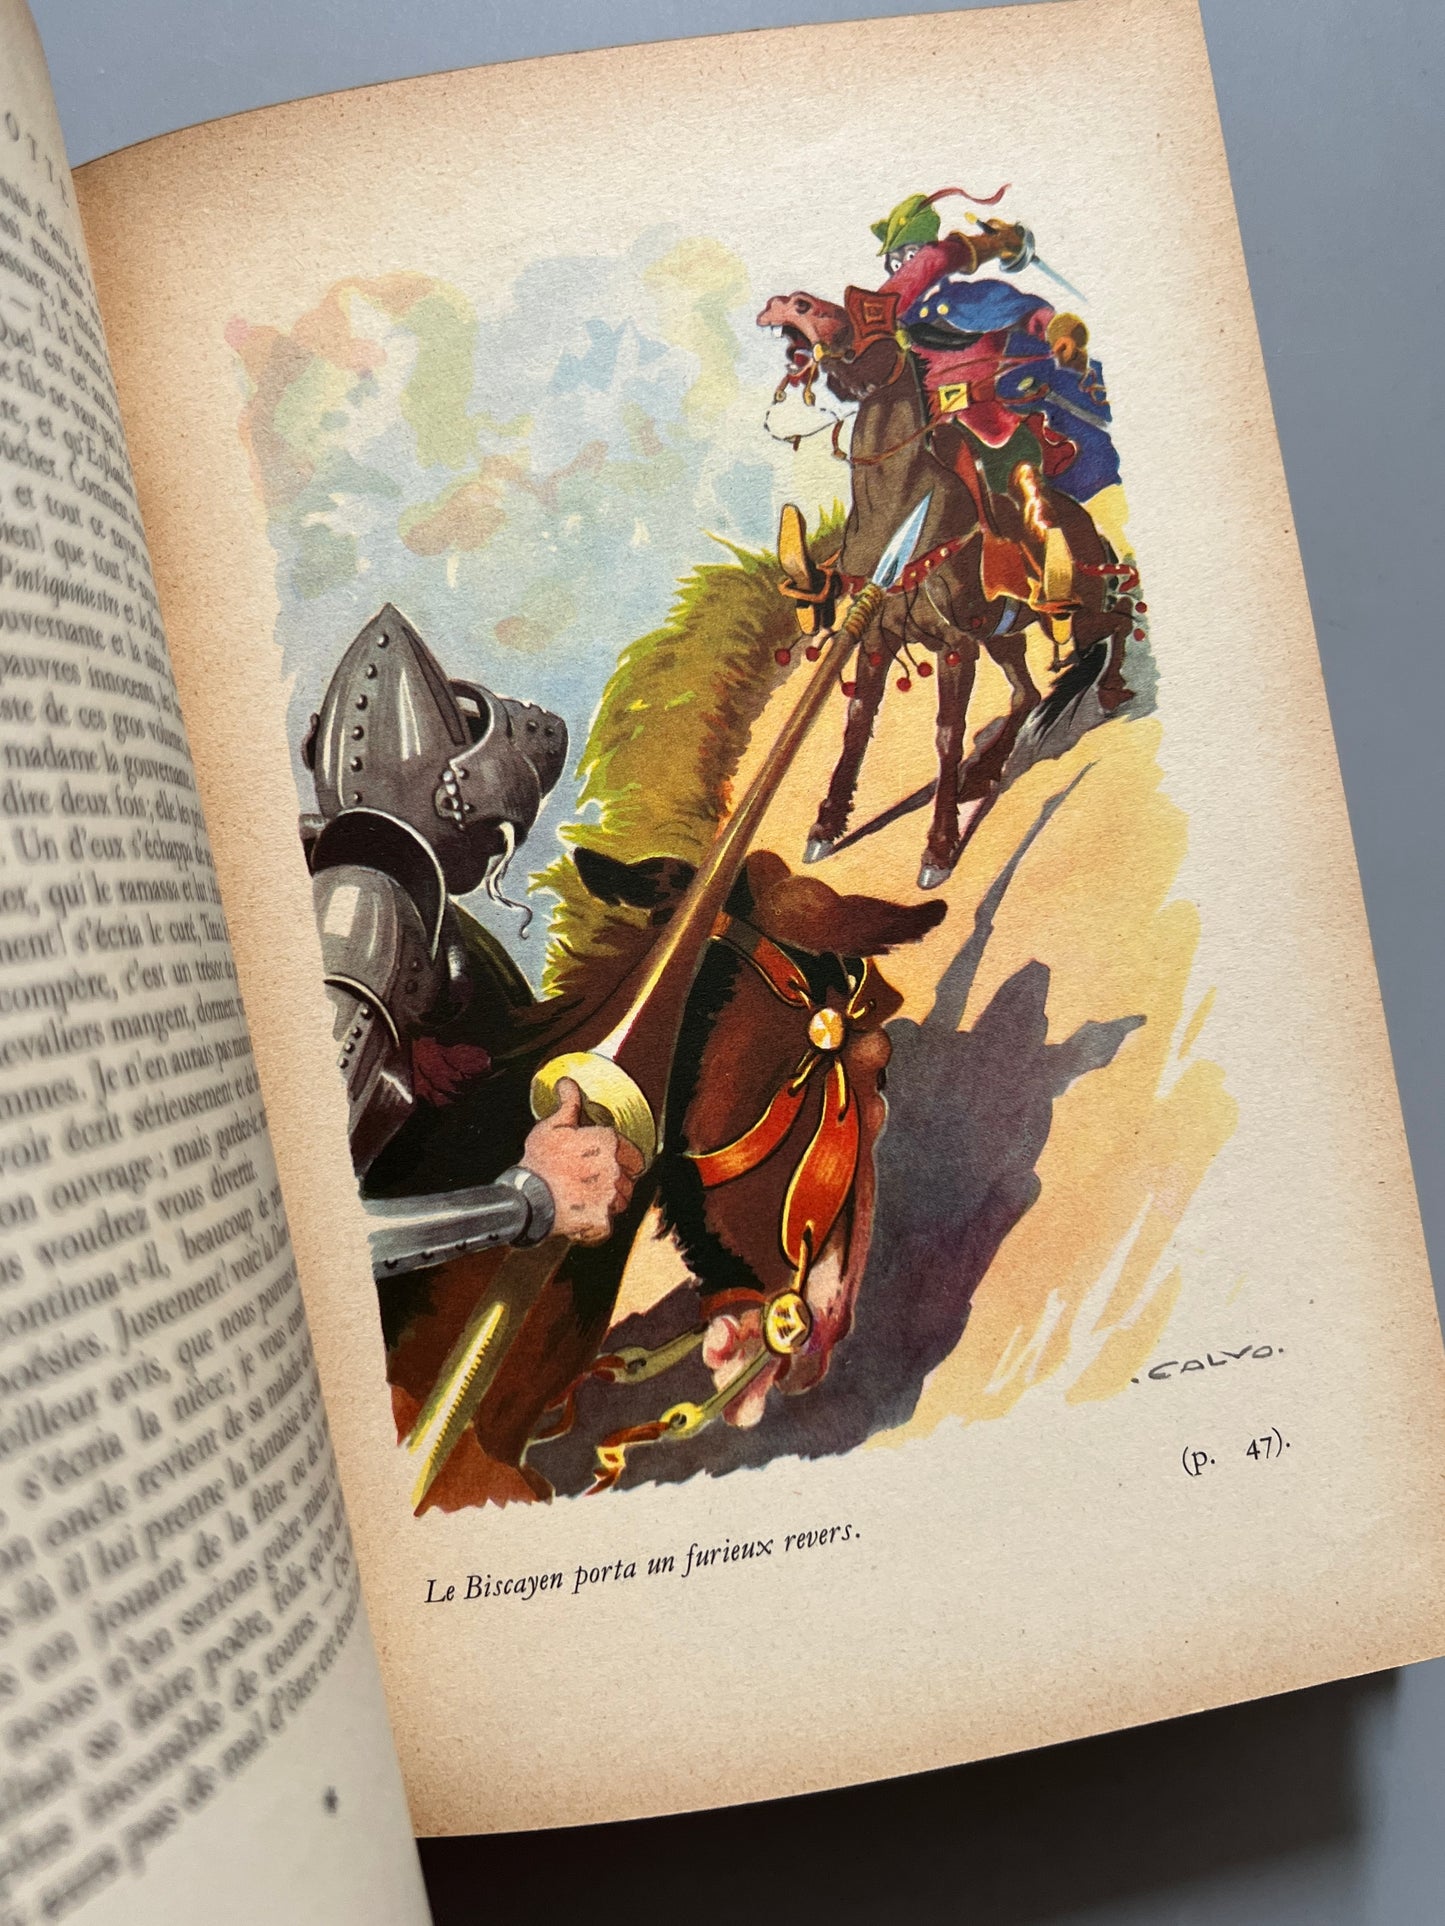 Don Quichotte, Miguel de Cervantes - Editions G. P., 1949